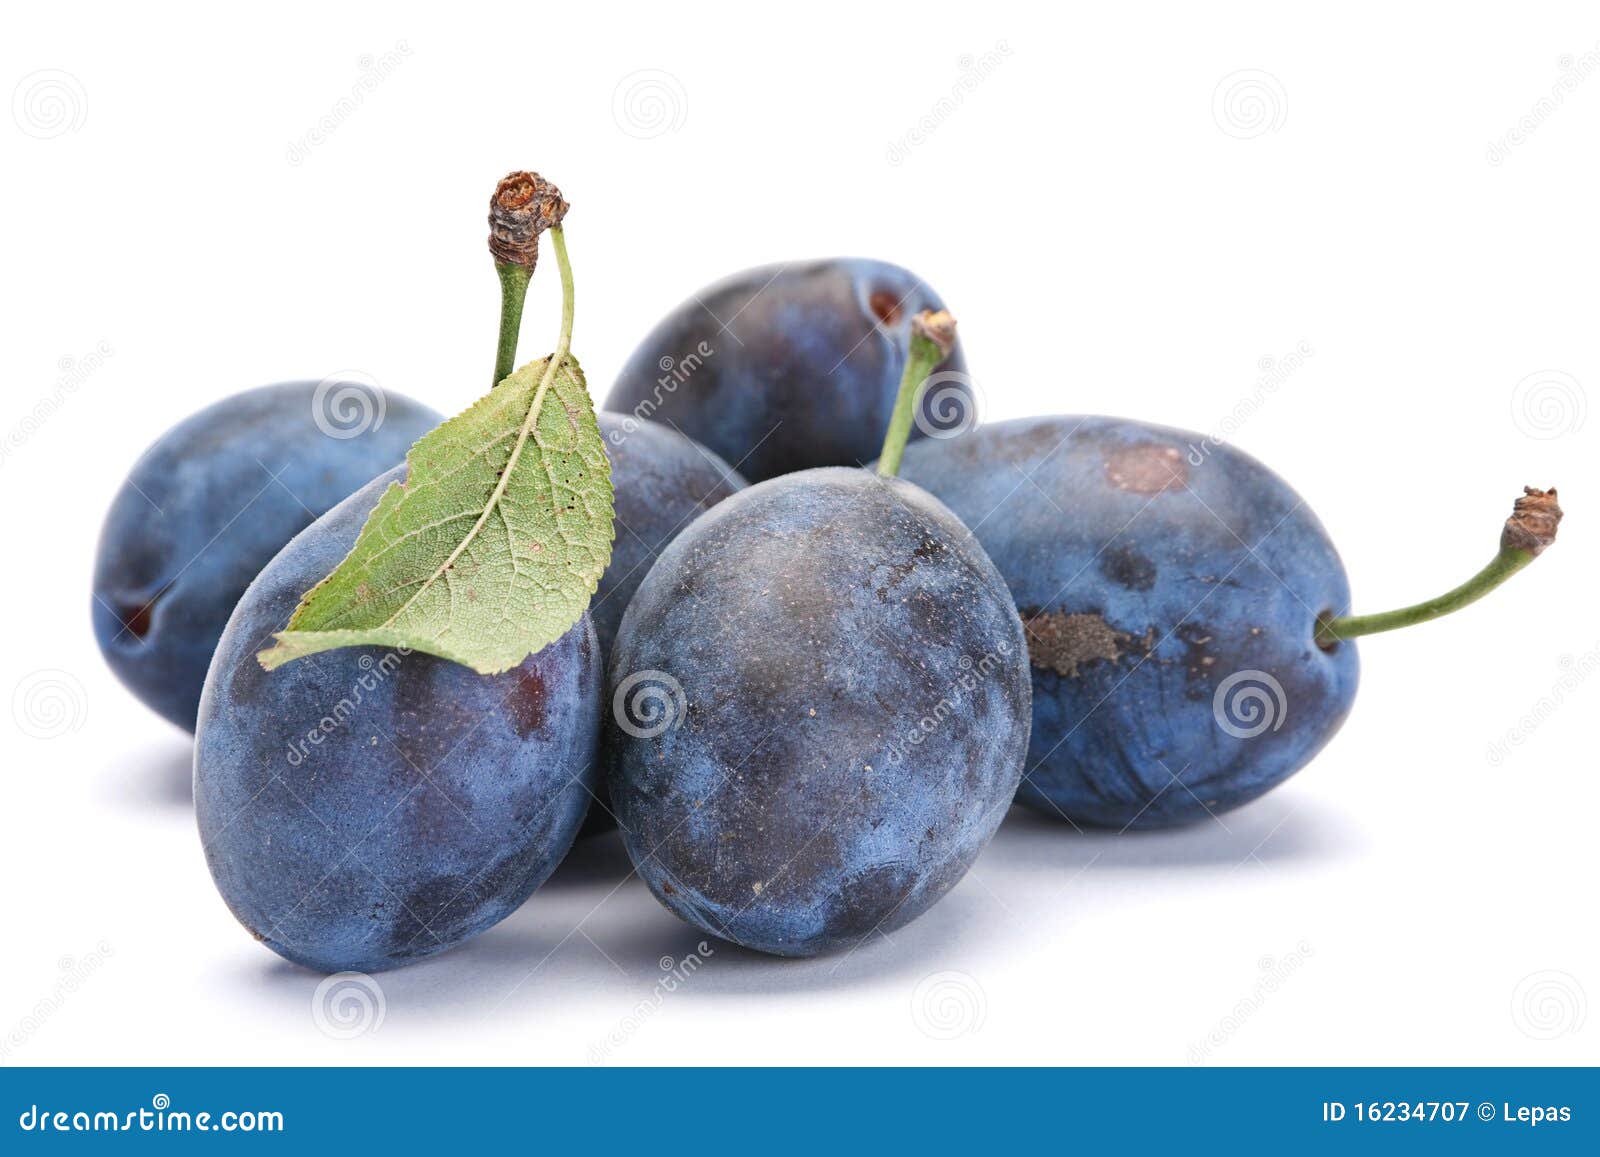 blue plum with leaf